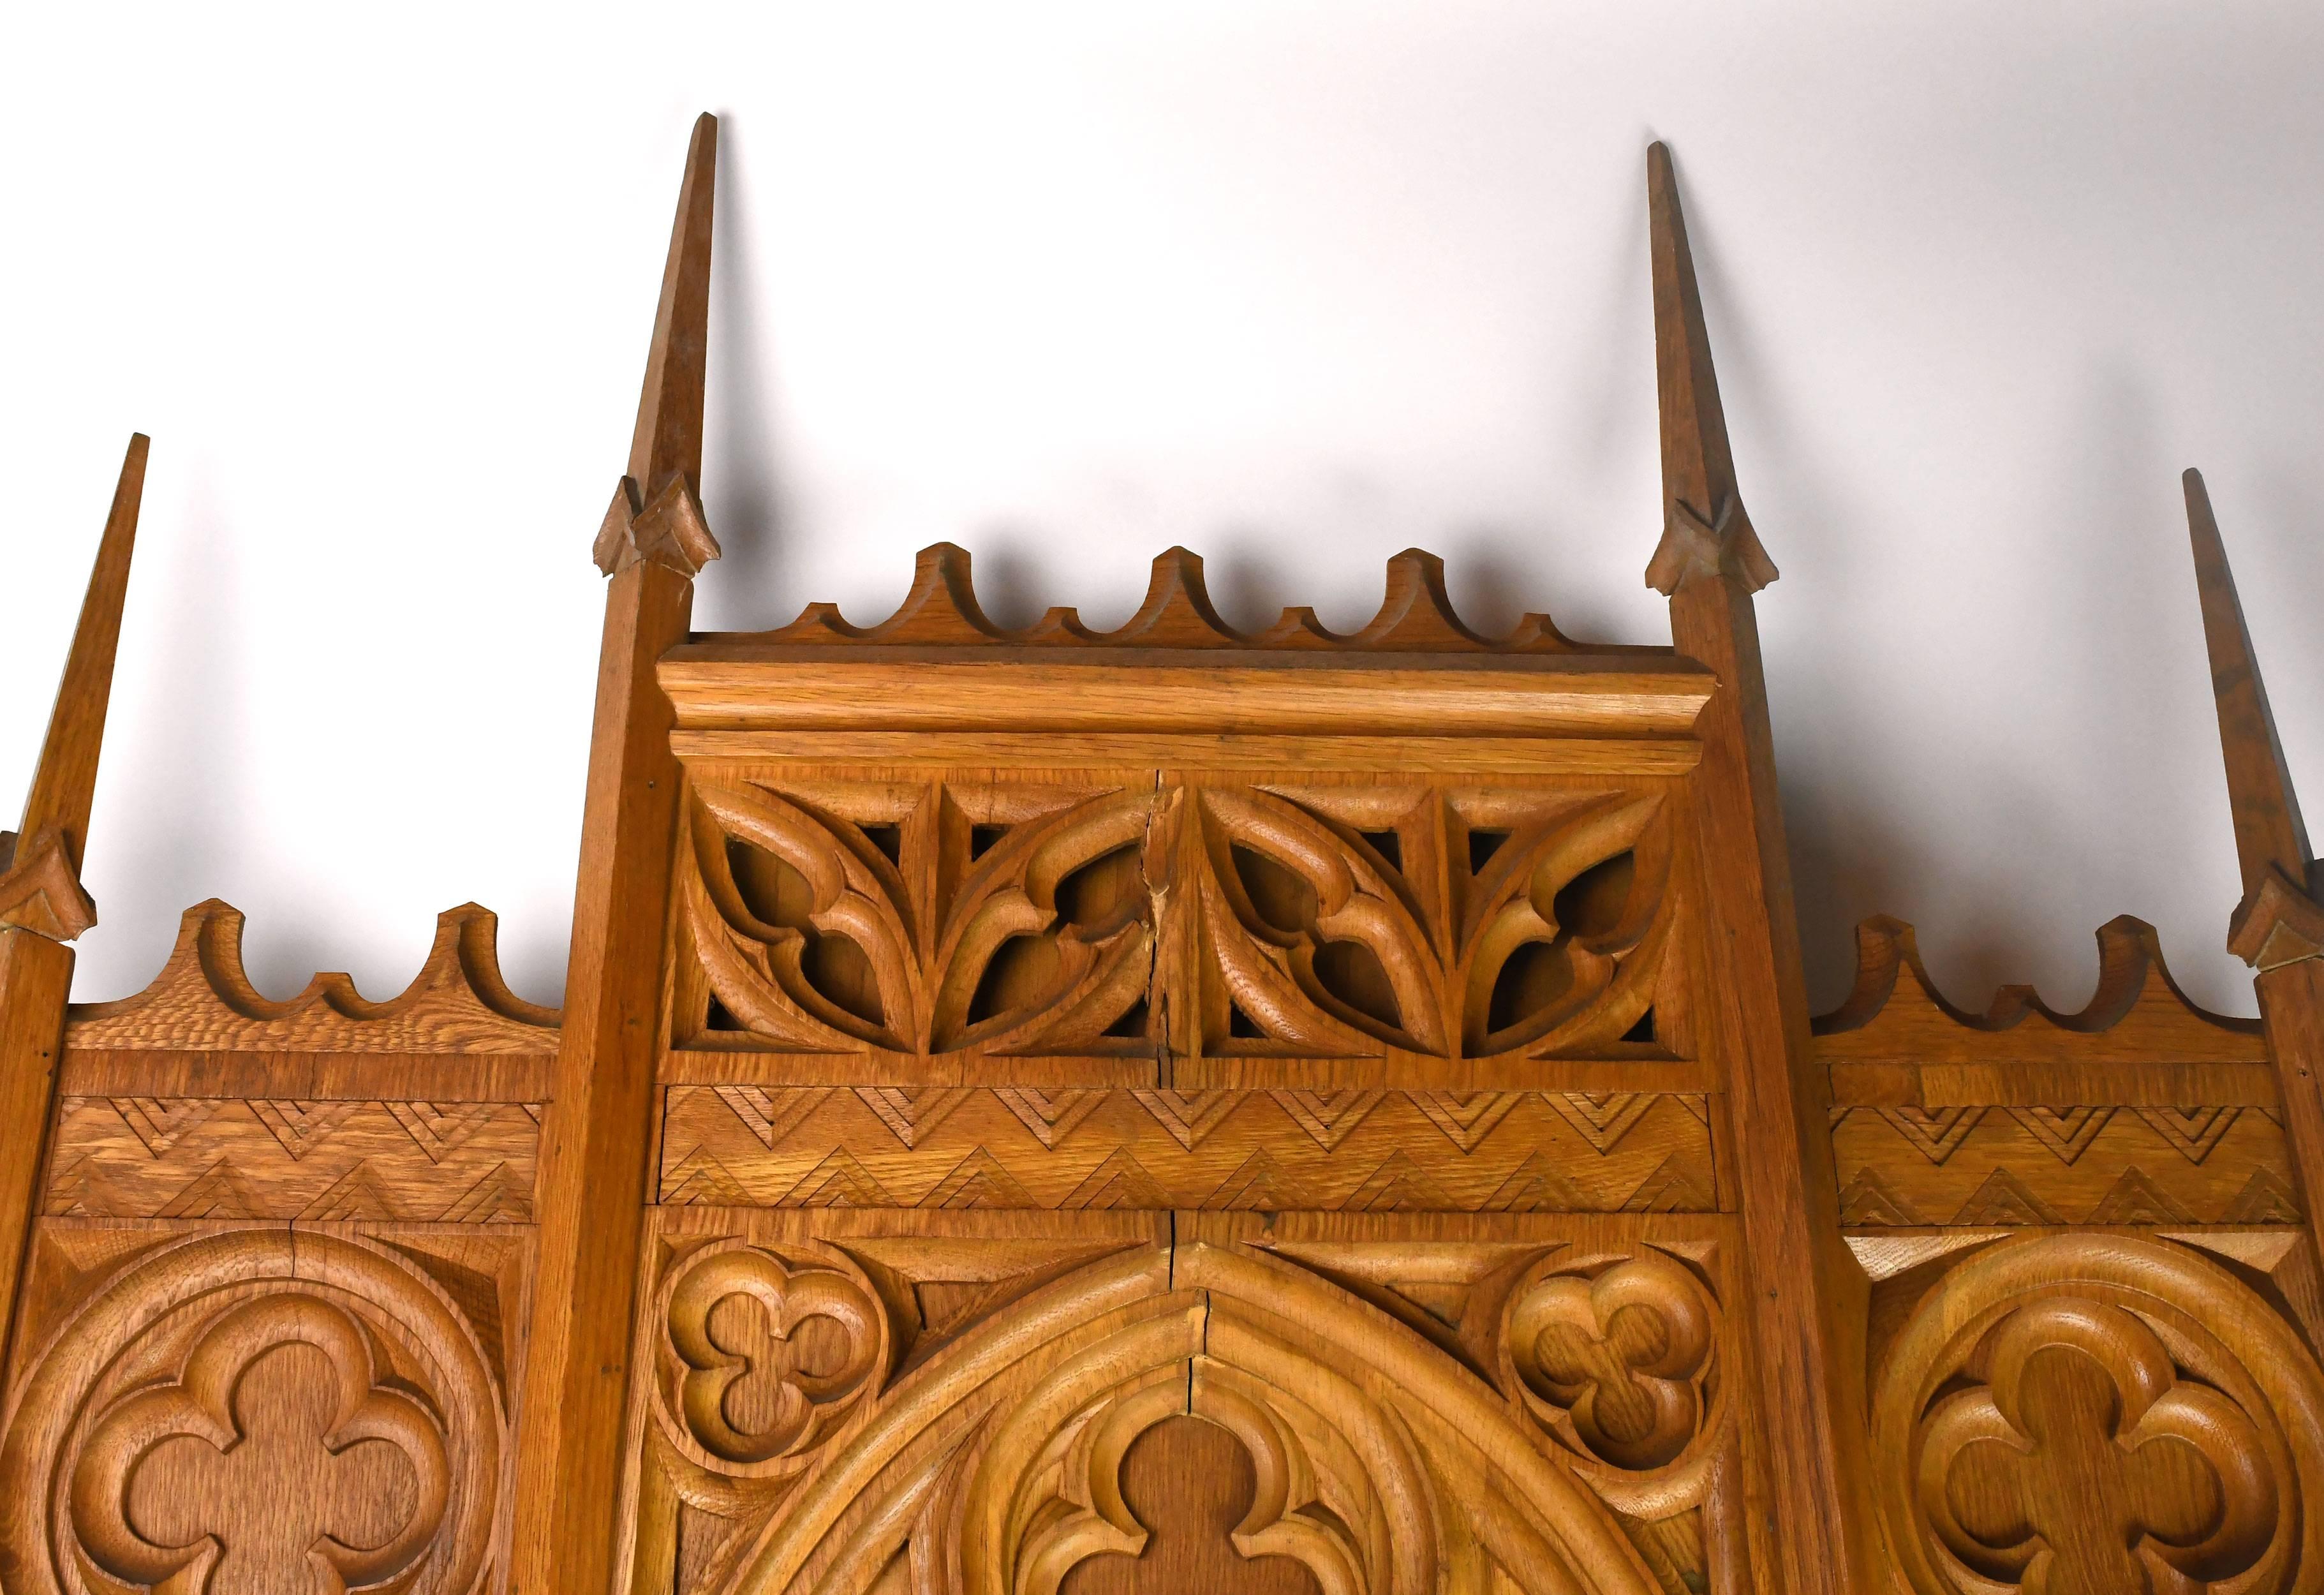 Gothic Revival Gothic Oak Altarpiece with Deco Details